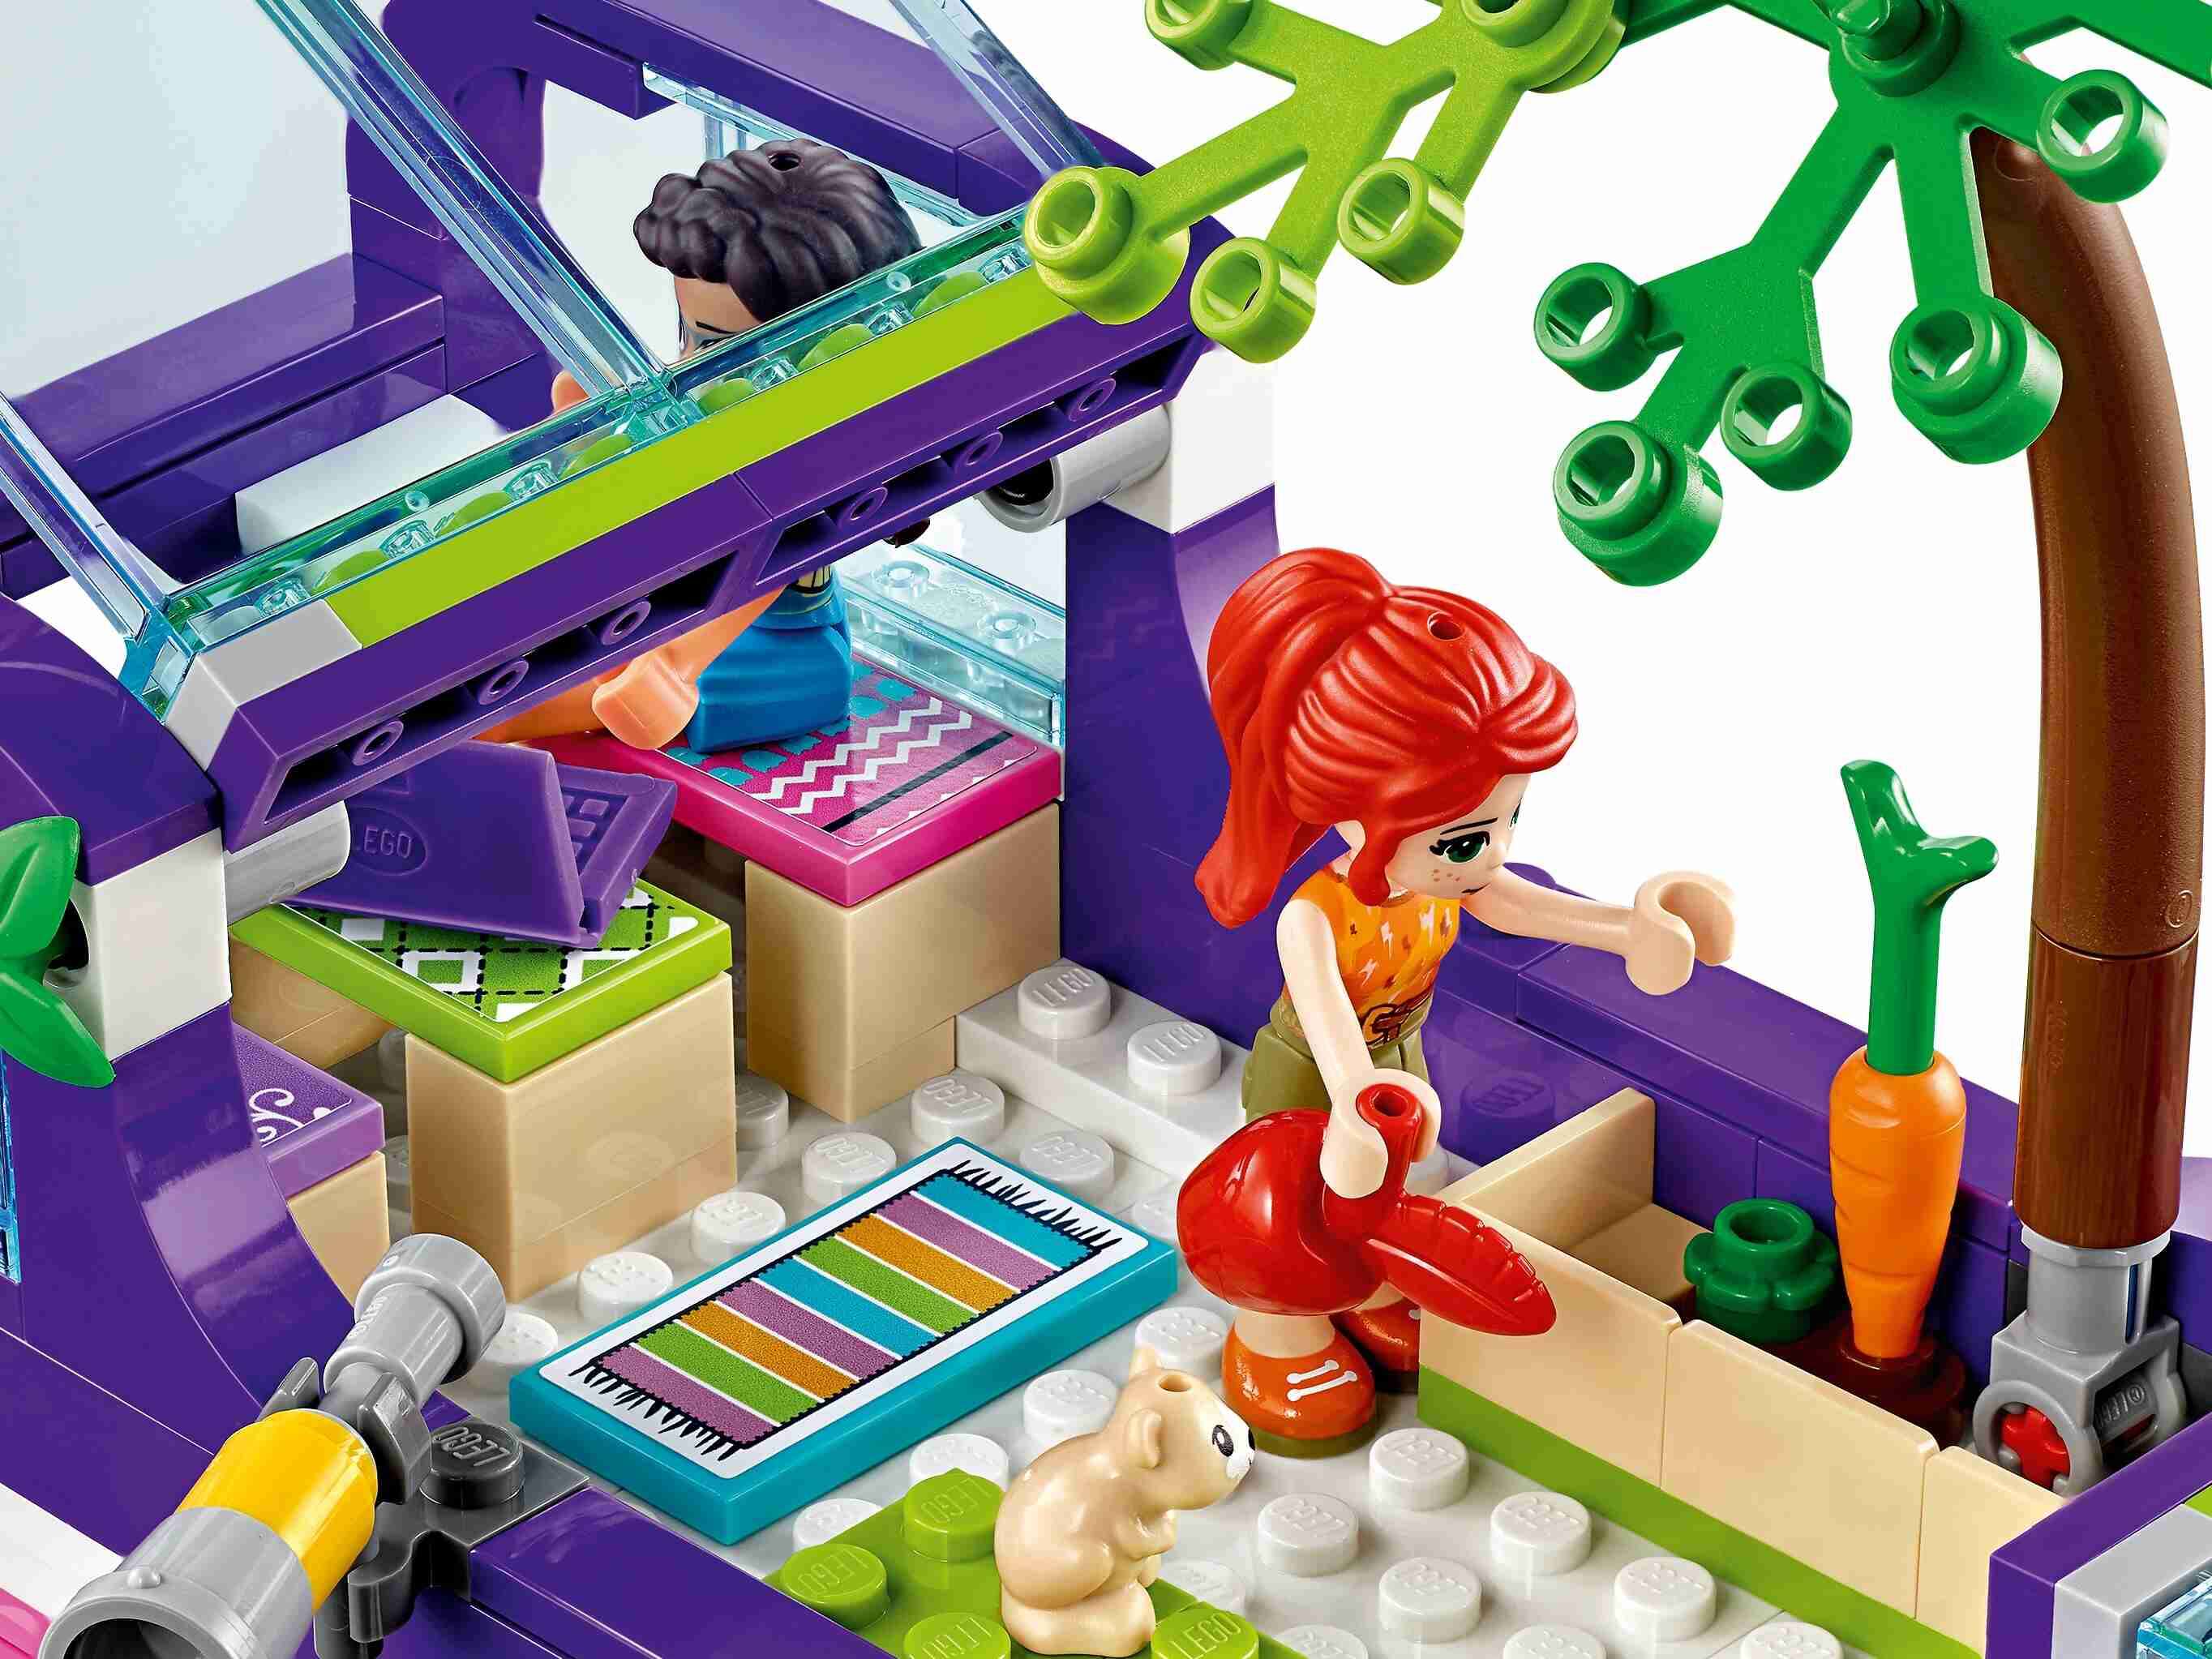 LEGO 41395 Friends Freundschaftsbus mit Bordpool, Rutsche und 3 Minifiguren